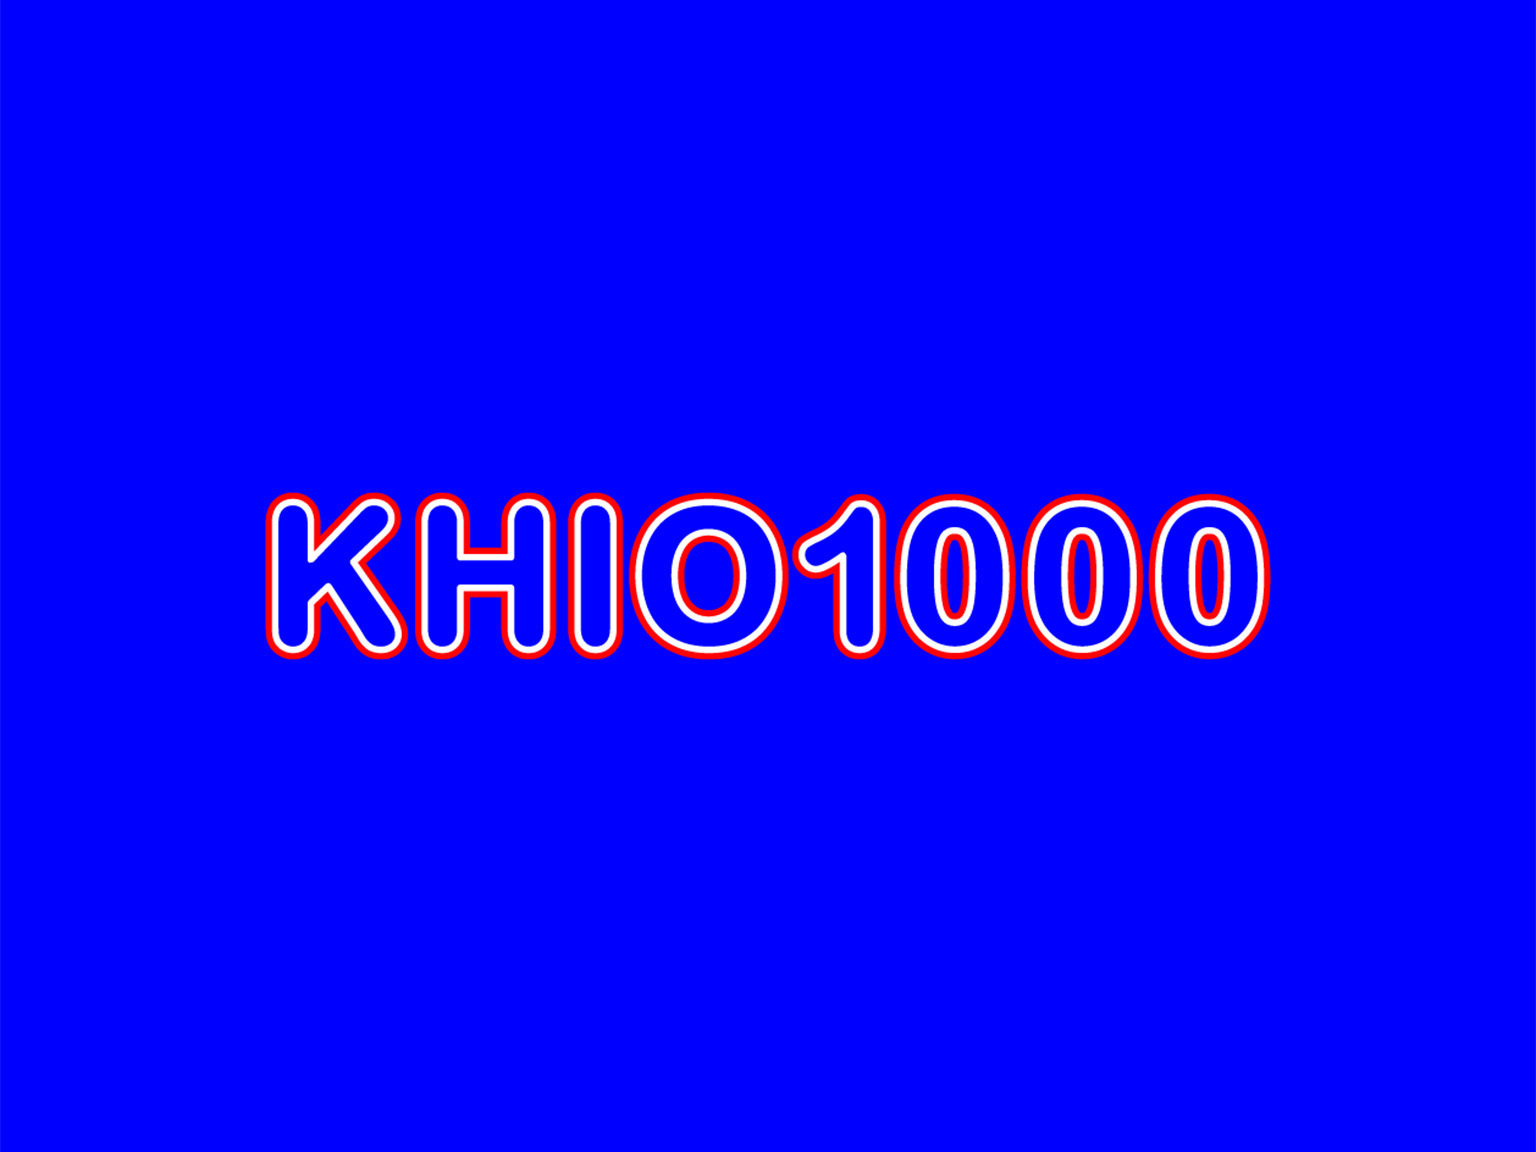 KHIO1000